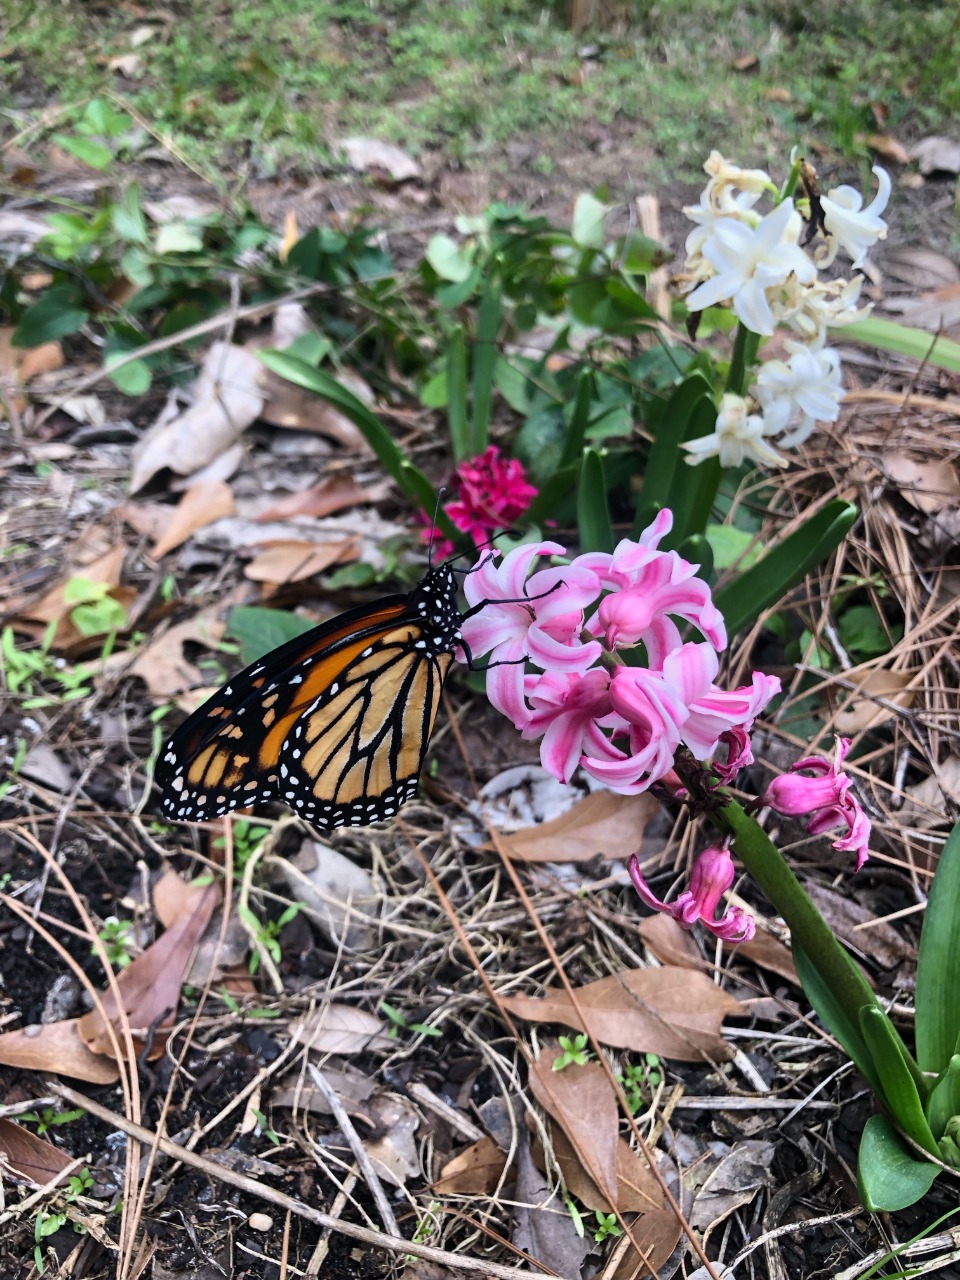 monarch on a hyacinth flower